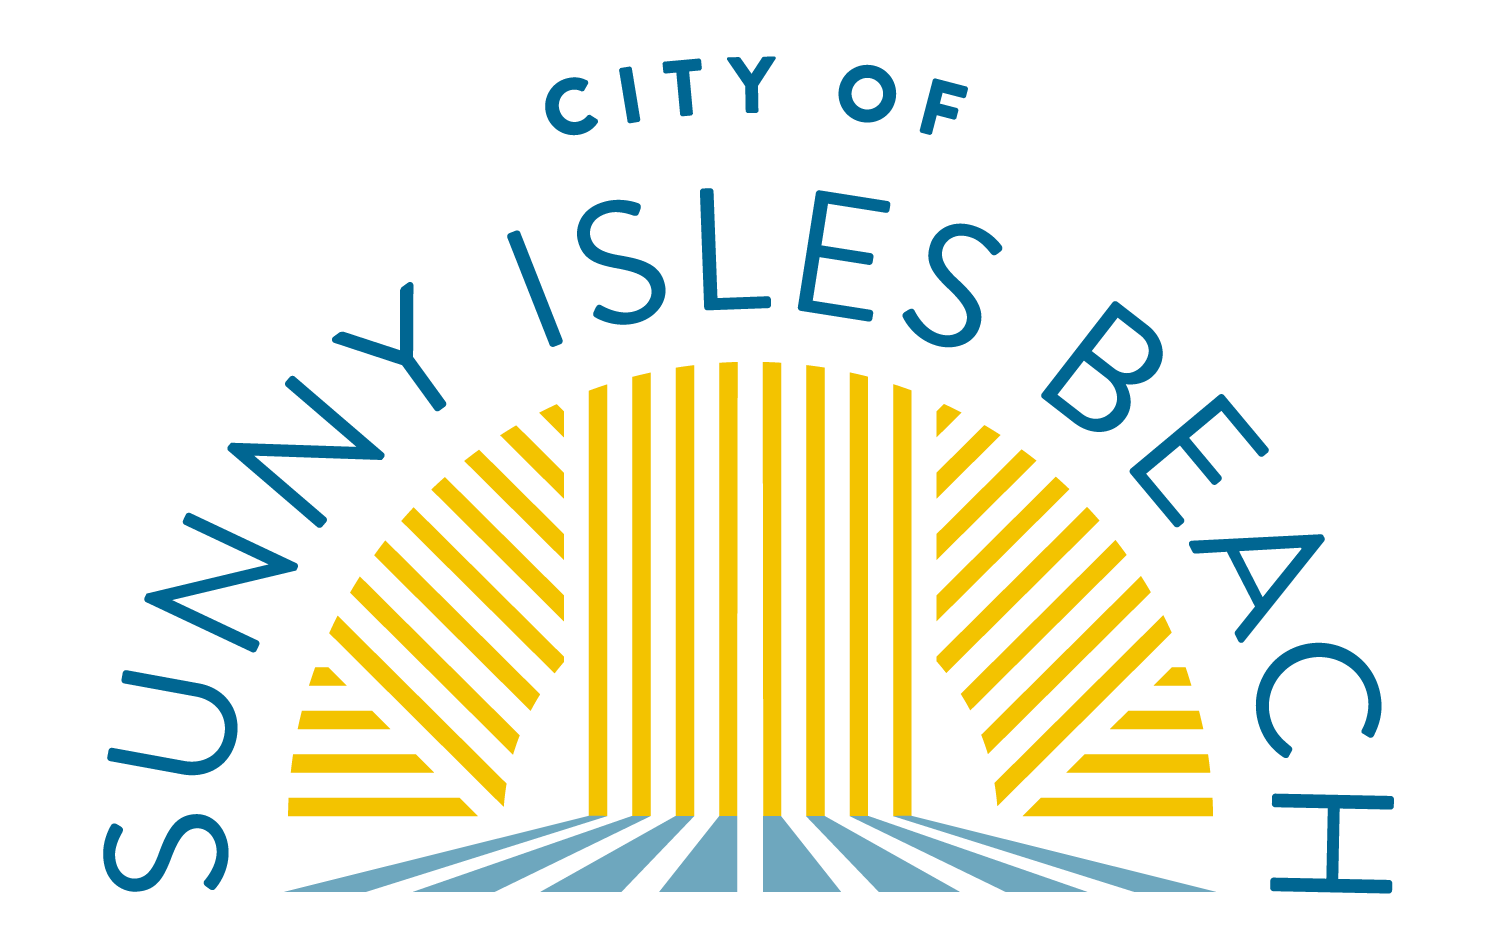 City of Sunny Isles Beach